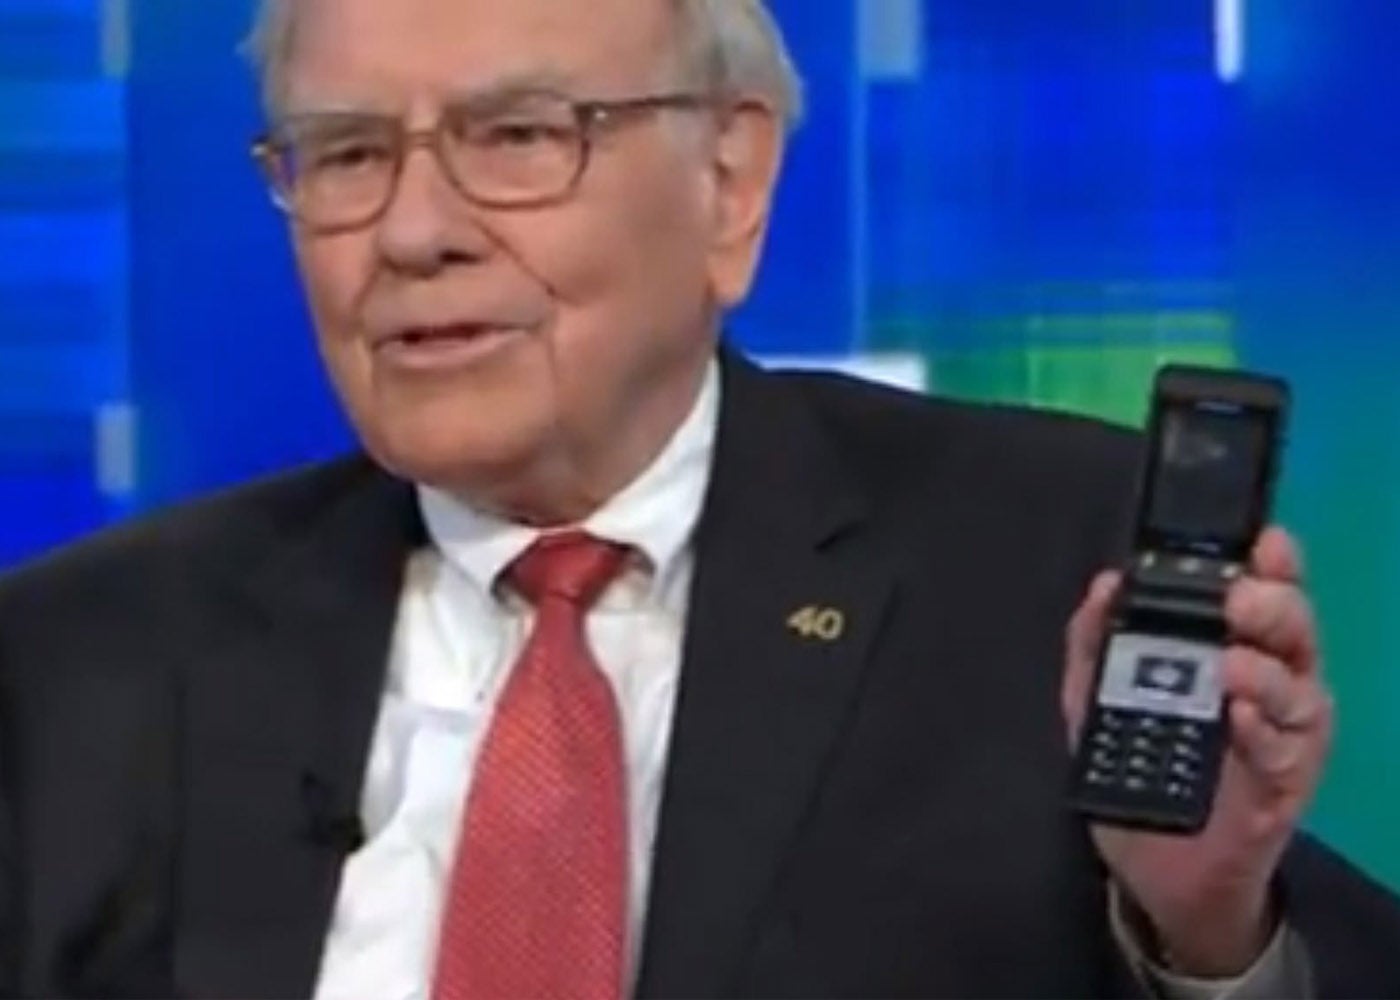 Warren Buffett finally changes his old Samsung for an iPhone